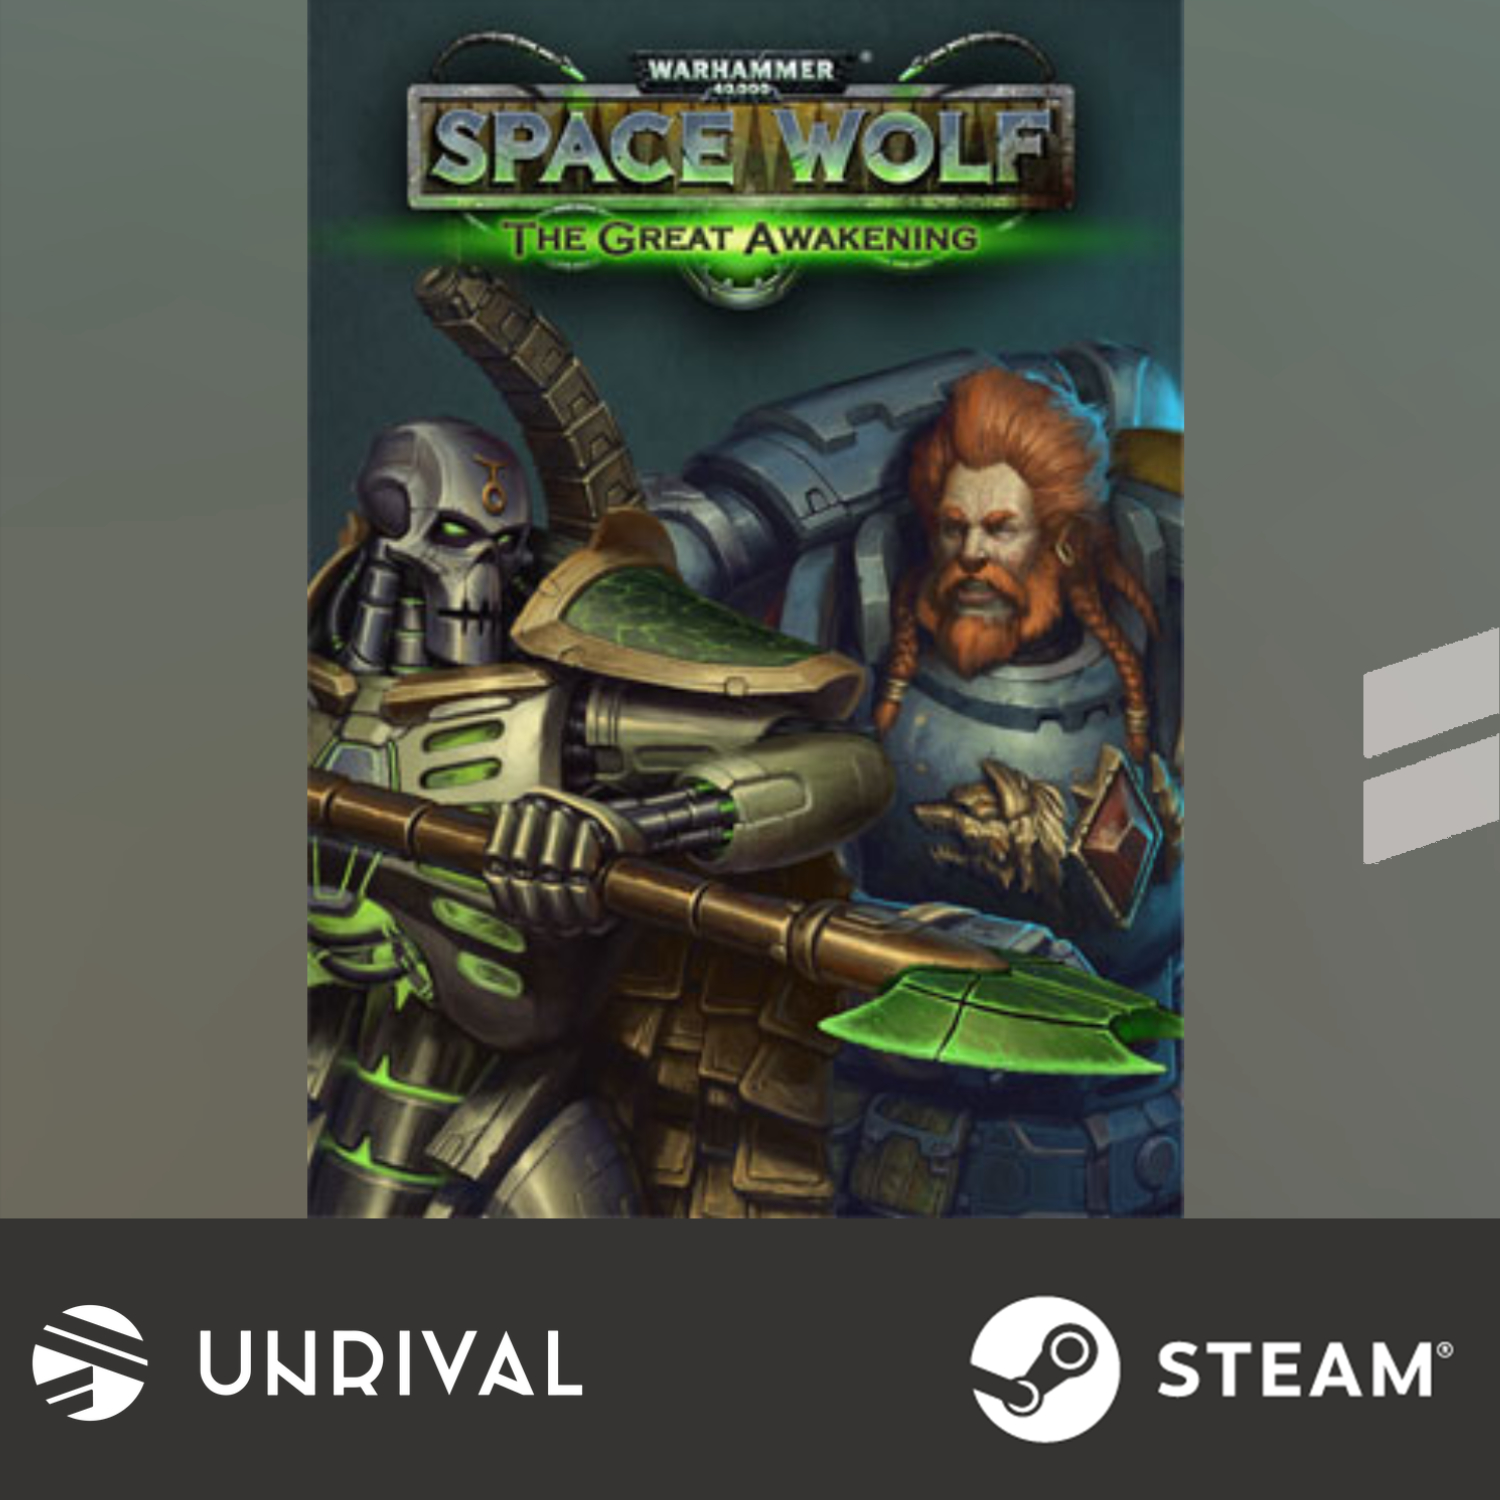 Warhammer 40,000: Space Wolf - Saga of the Great Awakening (DLC) PC Digital Download Game - Unrival